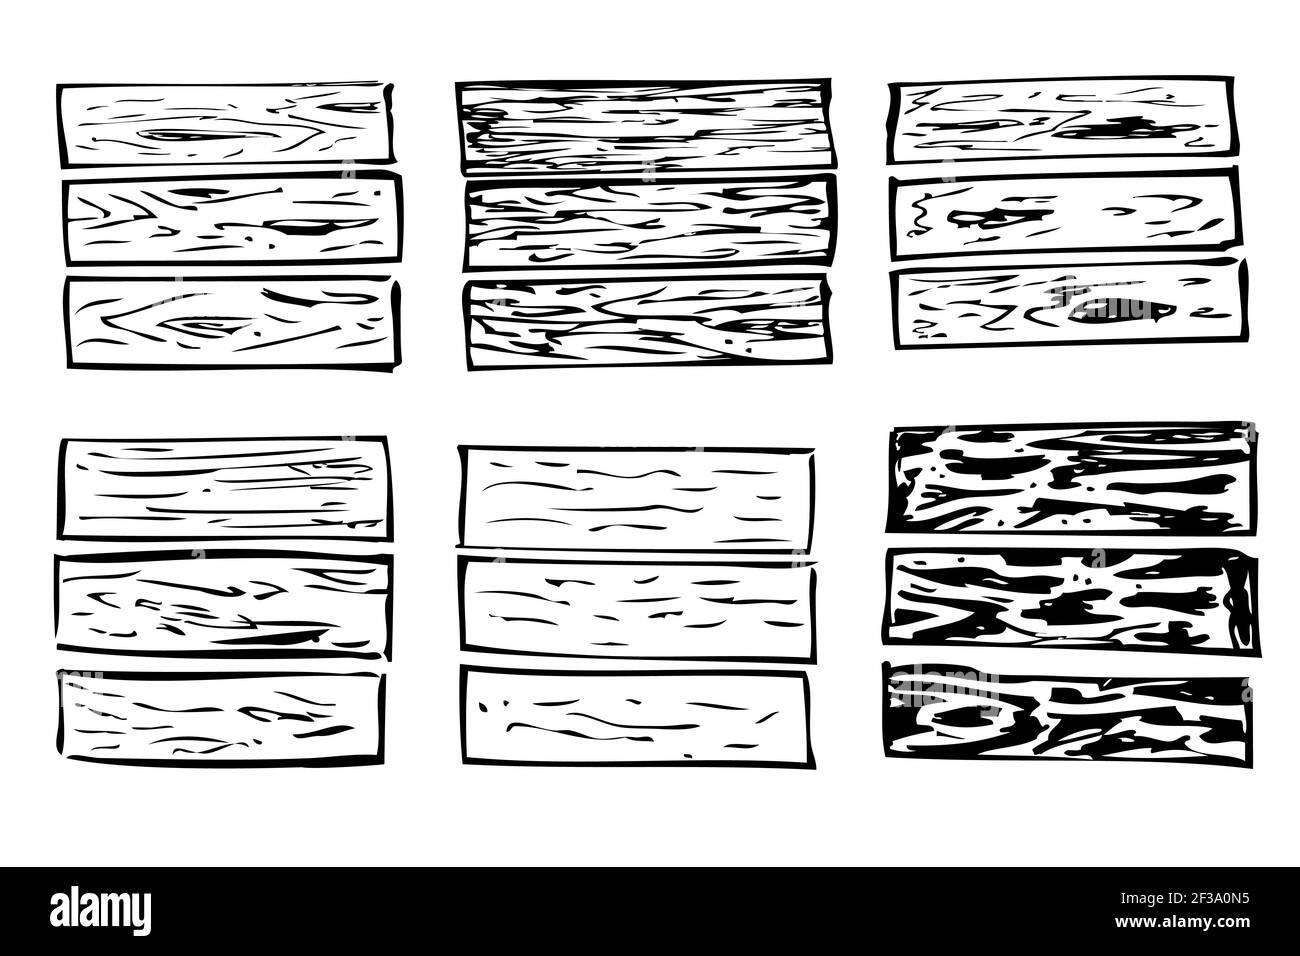 Vektor Schwarz und Weiß Hand zeichnen Skizze von Holzbrett  Stock-Vektorgrafik - Alamy